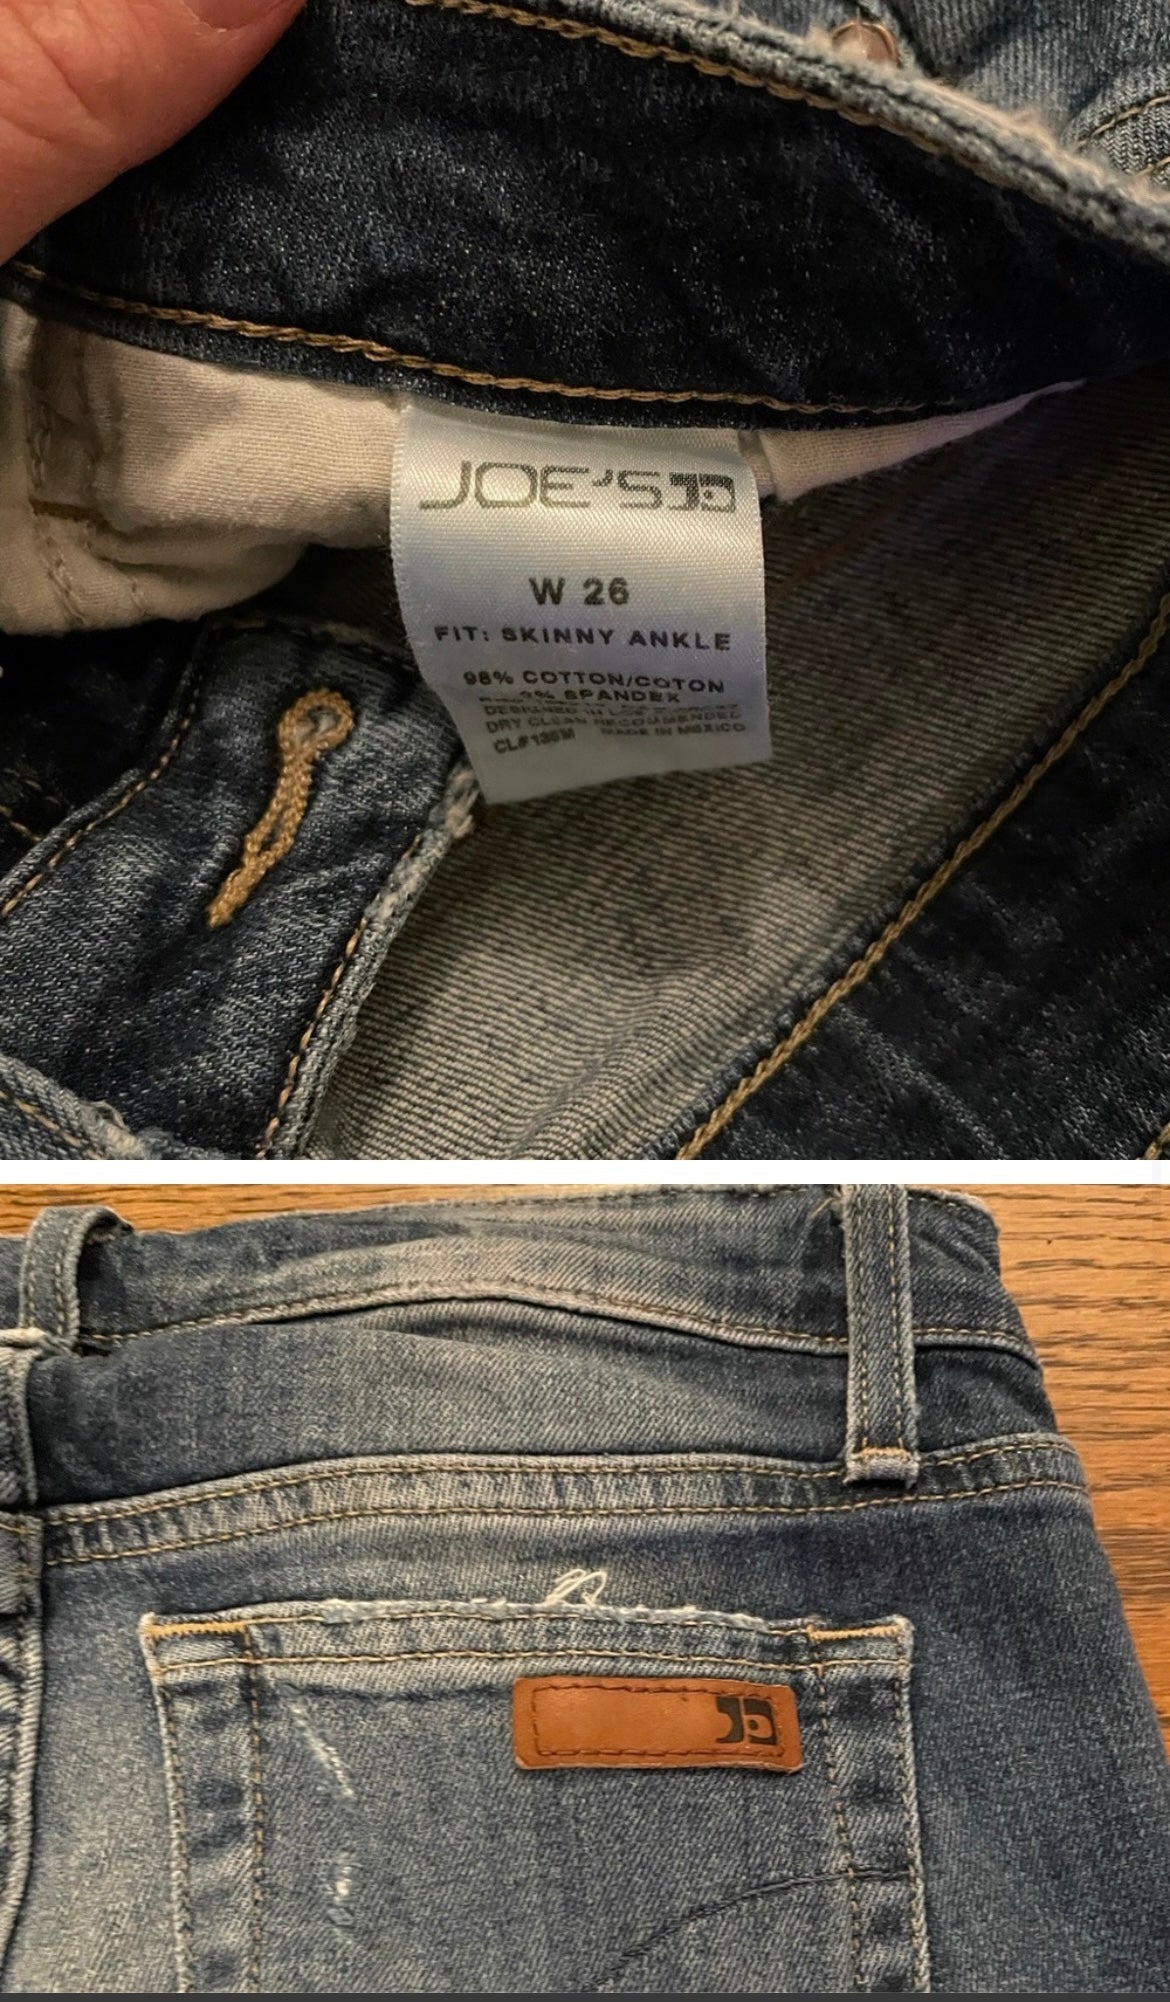 Joe's Jeans Skinny Ankle Women's Size 26